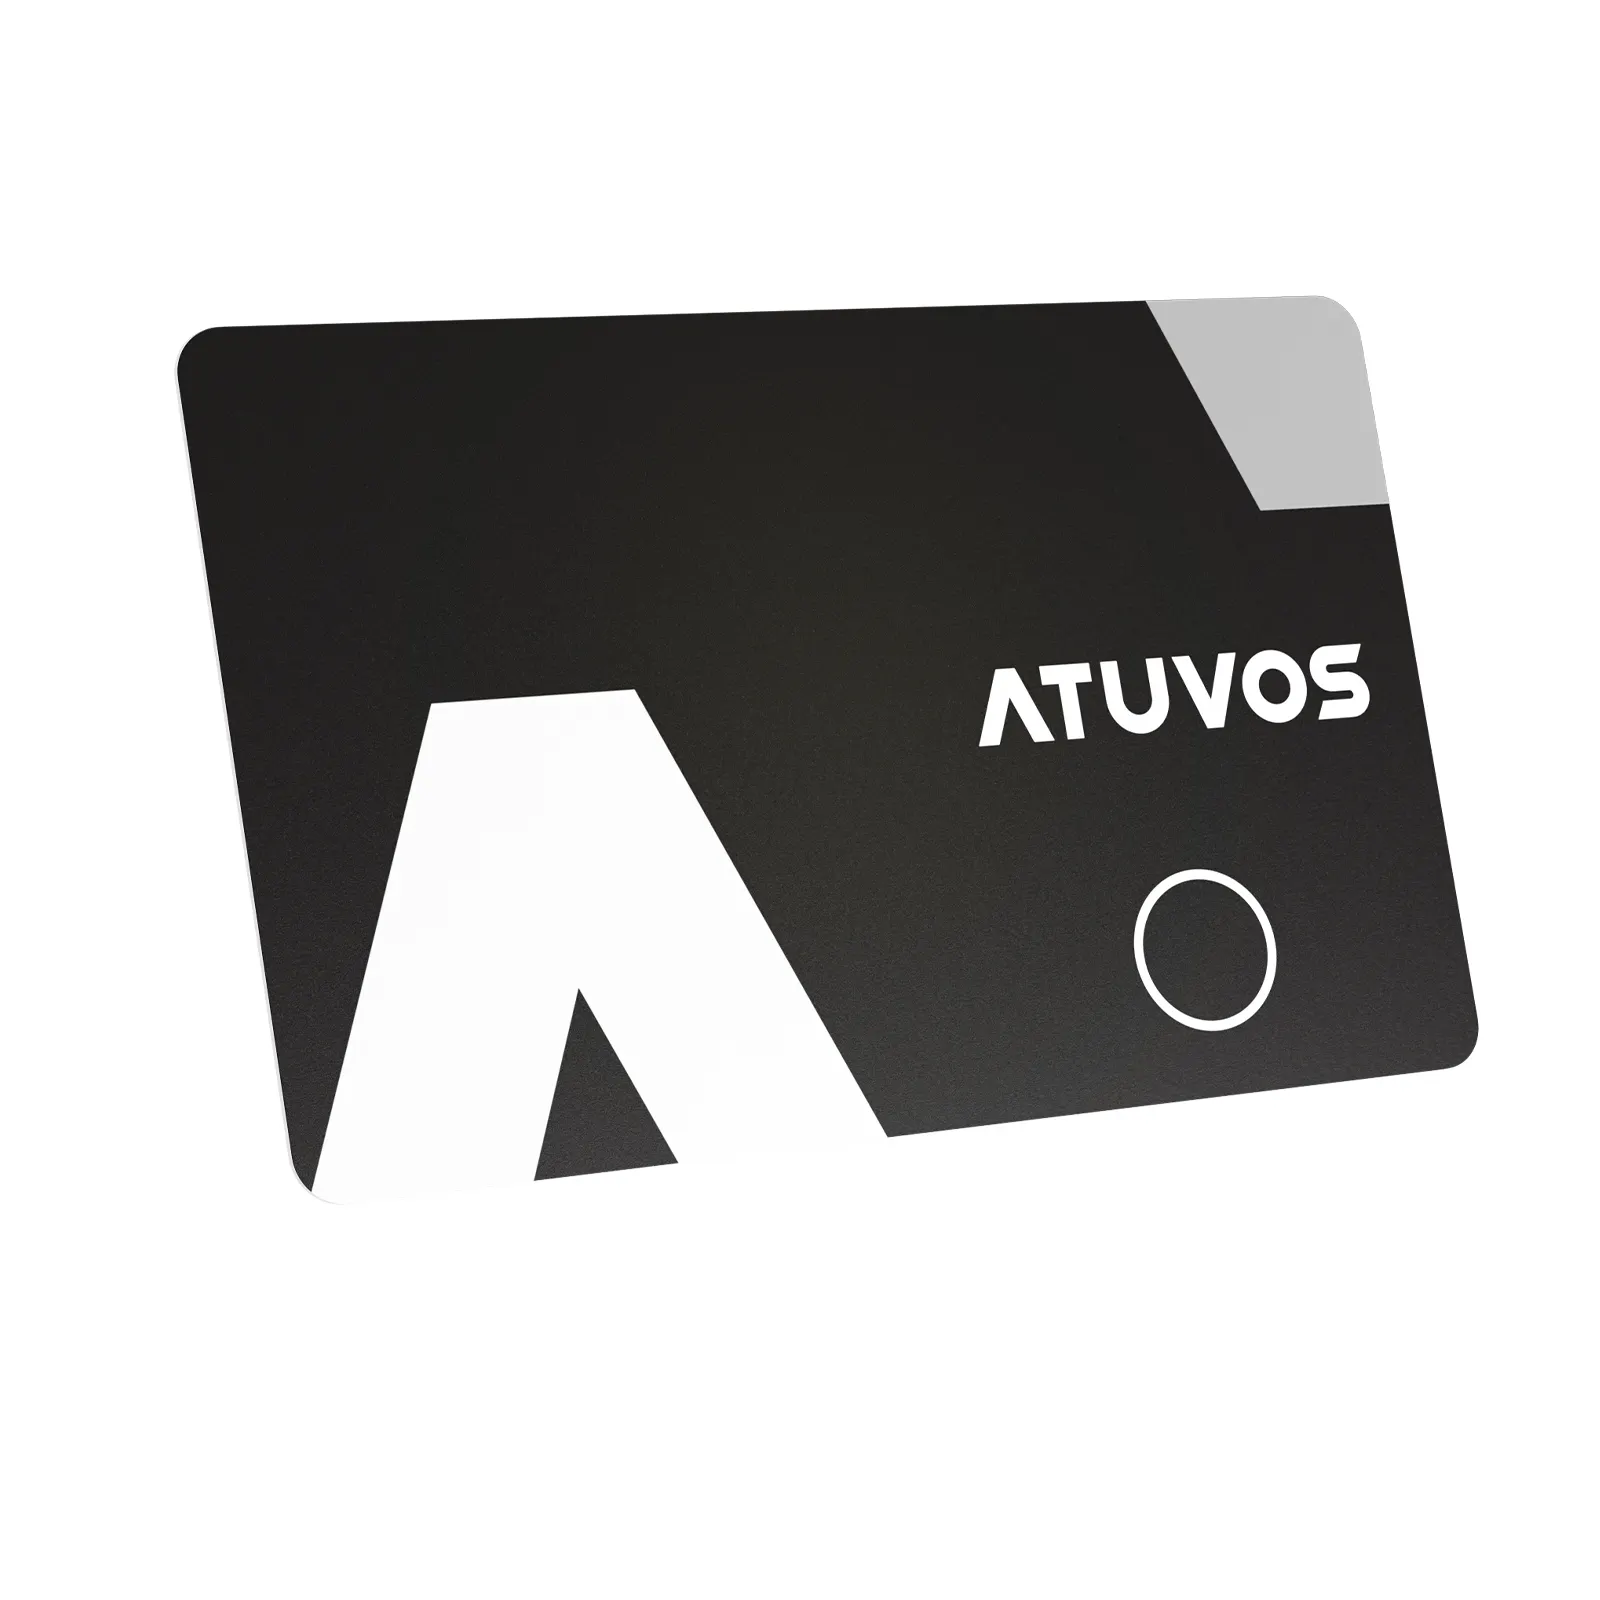 ATUVOS جهاز تنبيه ذكي لمنع الفقدان جهاز تذكيرك بمفتاح قابل للكشف عن الموقع يعقبك وعمل على إيجاد المفاتيح